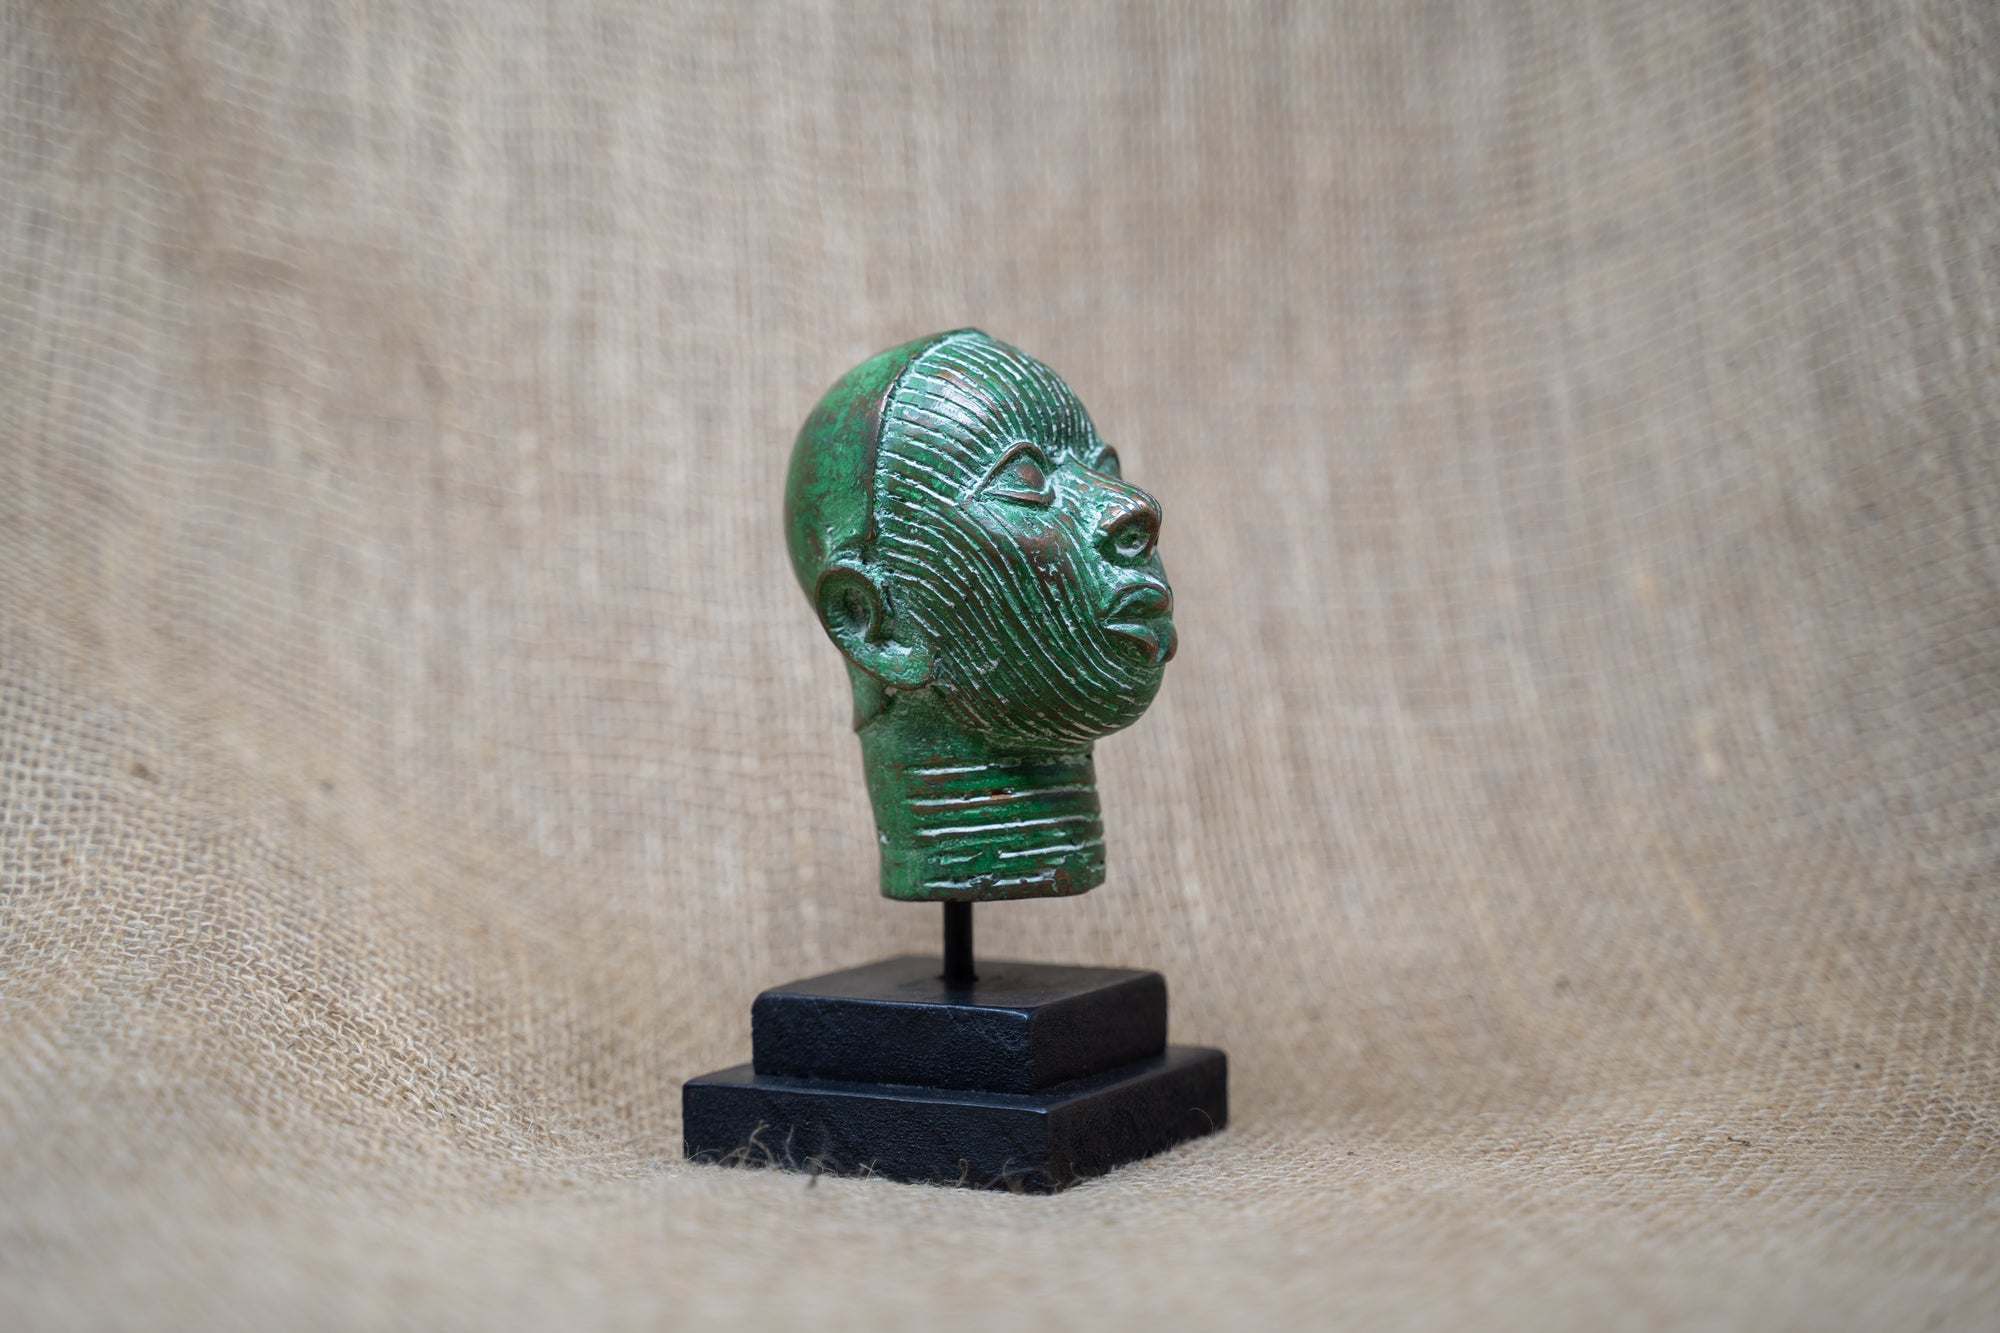 Benin Bronze Head - 37.2